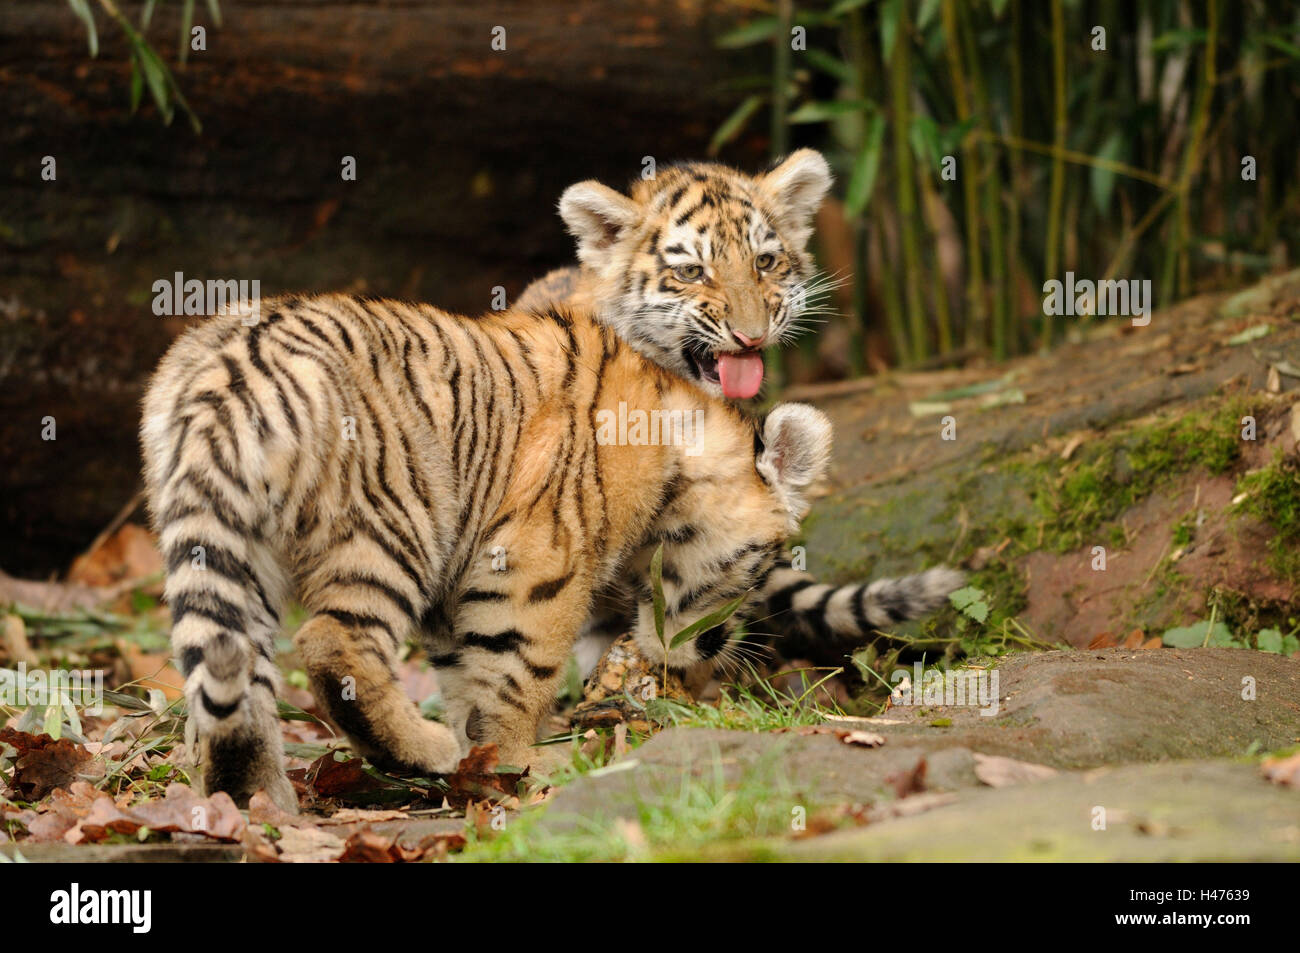 Panthera Tigris Altaica, Jungtiere, Seitenansicht, sibirische Tiger, Spiel, Blick in die Kamera Stockfoto